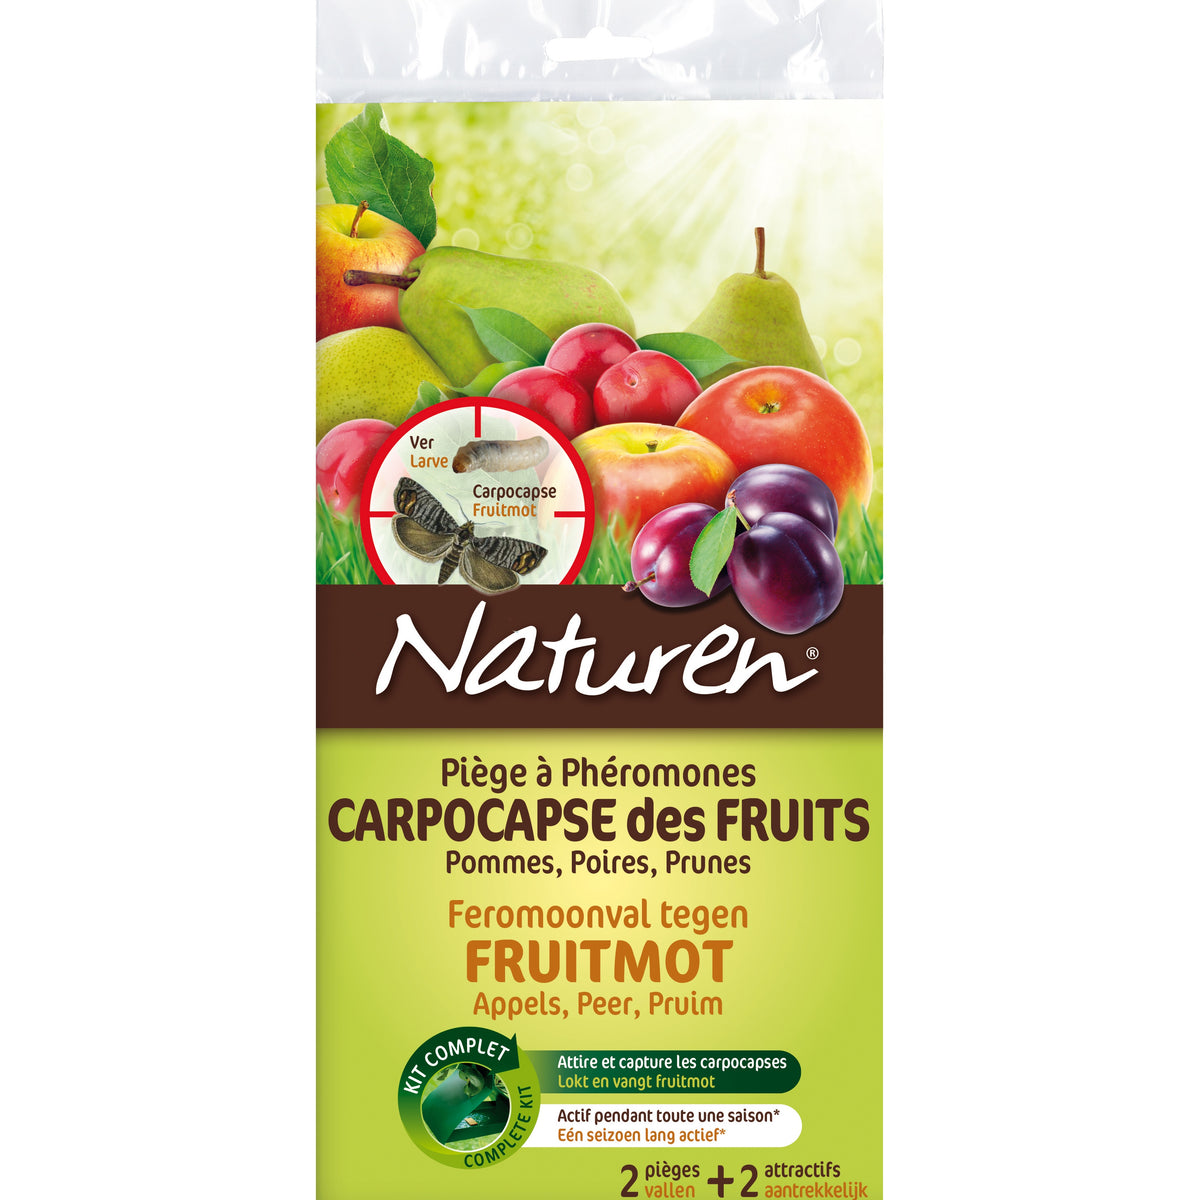 2 Pièges à phéromones - Carpocapse des fruits NATUREN - Plantes